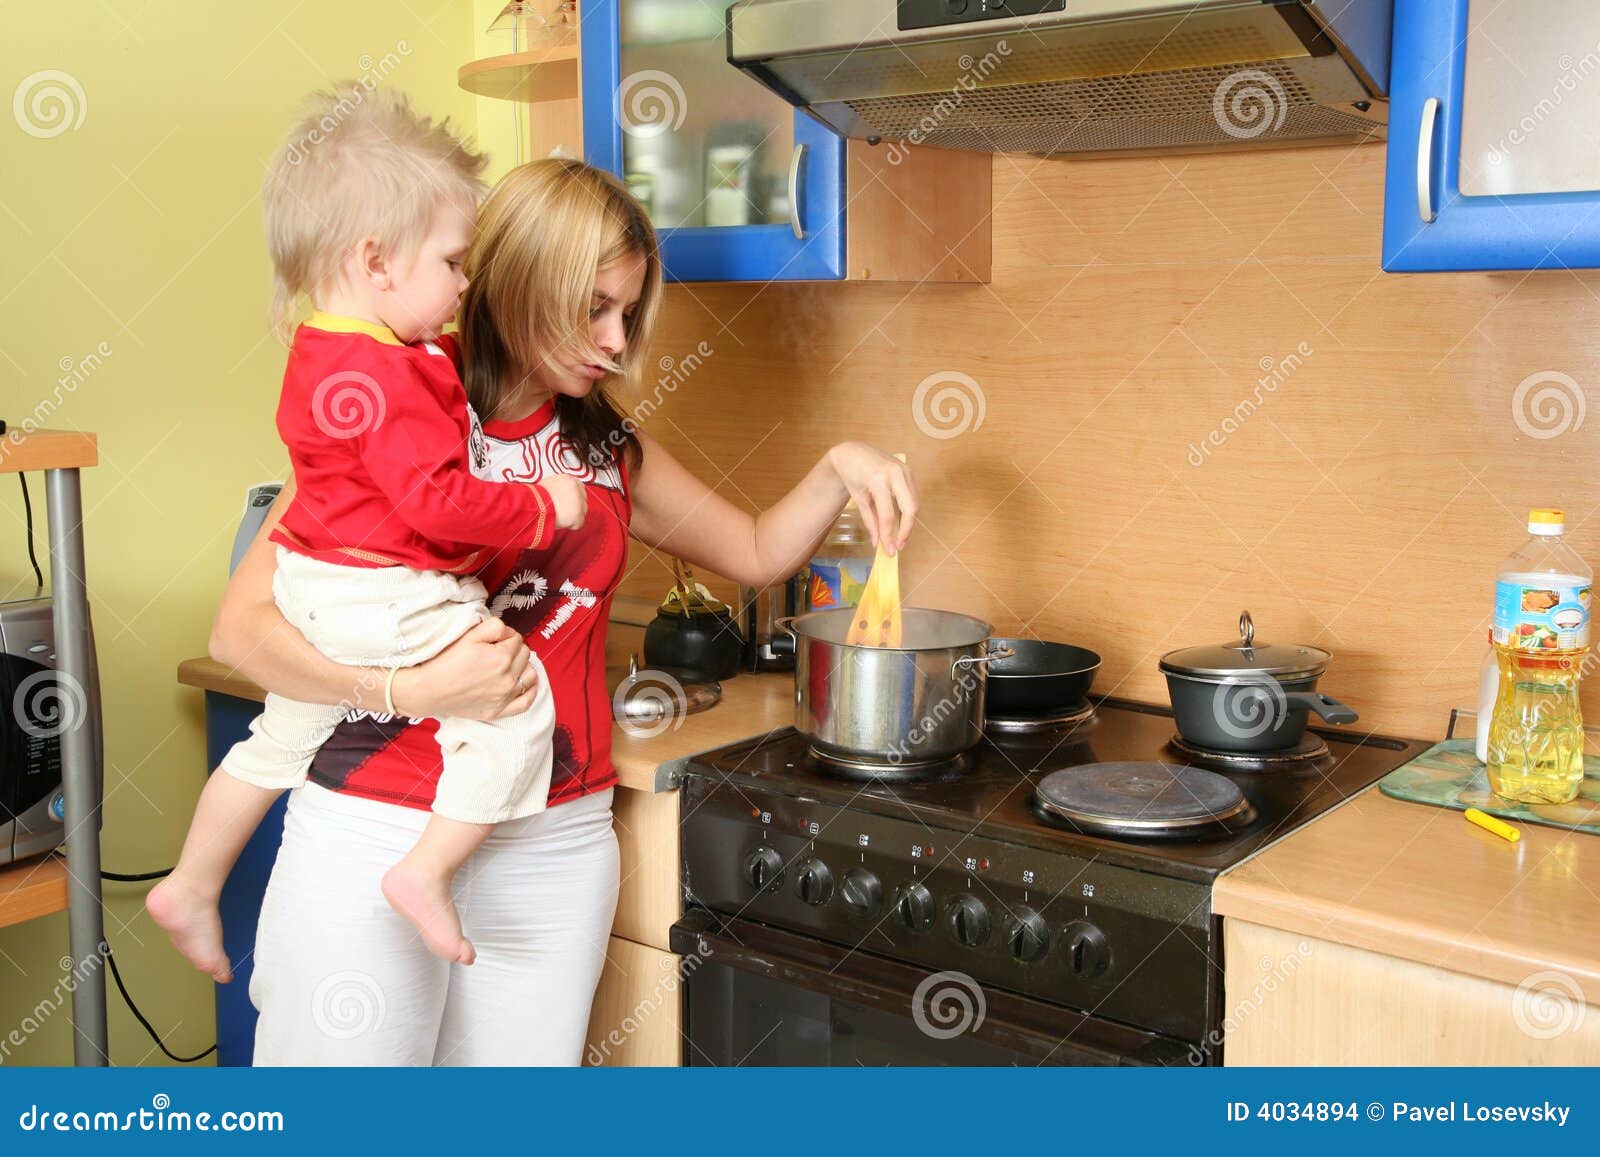 Сын мать на кухне видео. Кухня для детей. Мама с ребенком на кухне. Фотосессия мама и дети на кухне. Женщина с ребенком на кухне.